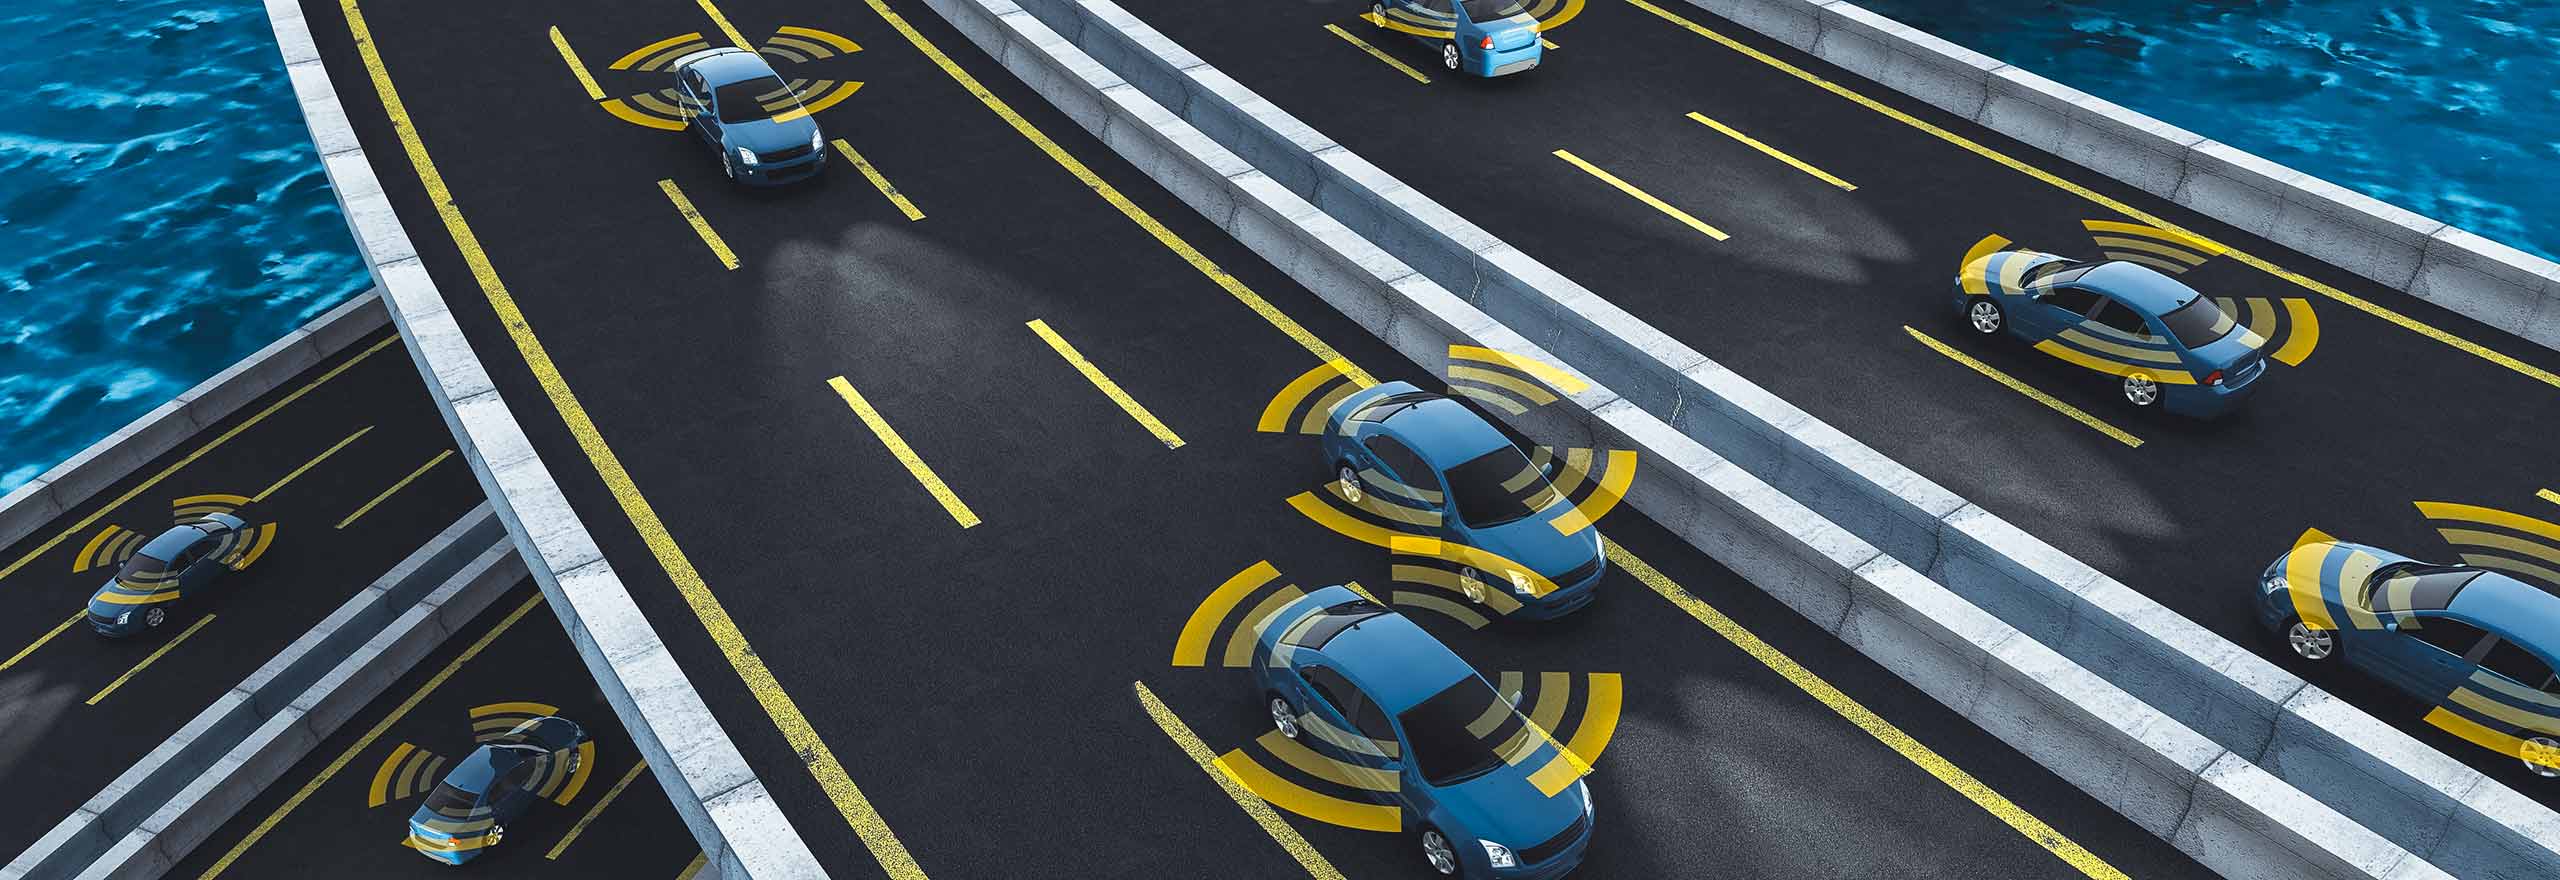 Fahrzeuge, die auf einer Brücke fahren, mit überlagerten orange-weißen Grafiken zur Anzeige der autonomen Simulationdaten, die sie umgeben